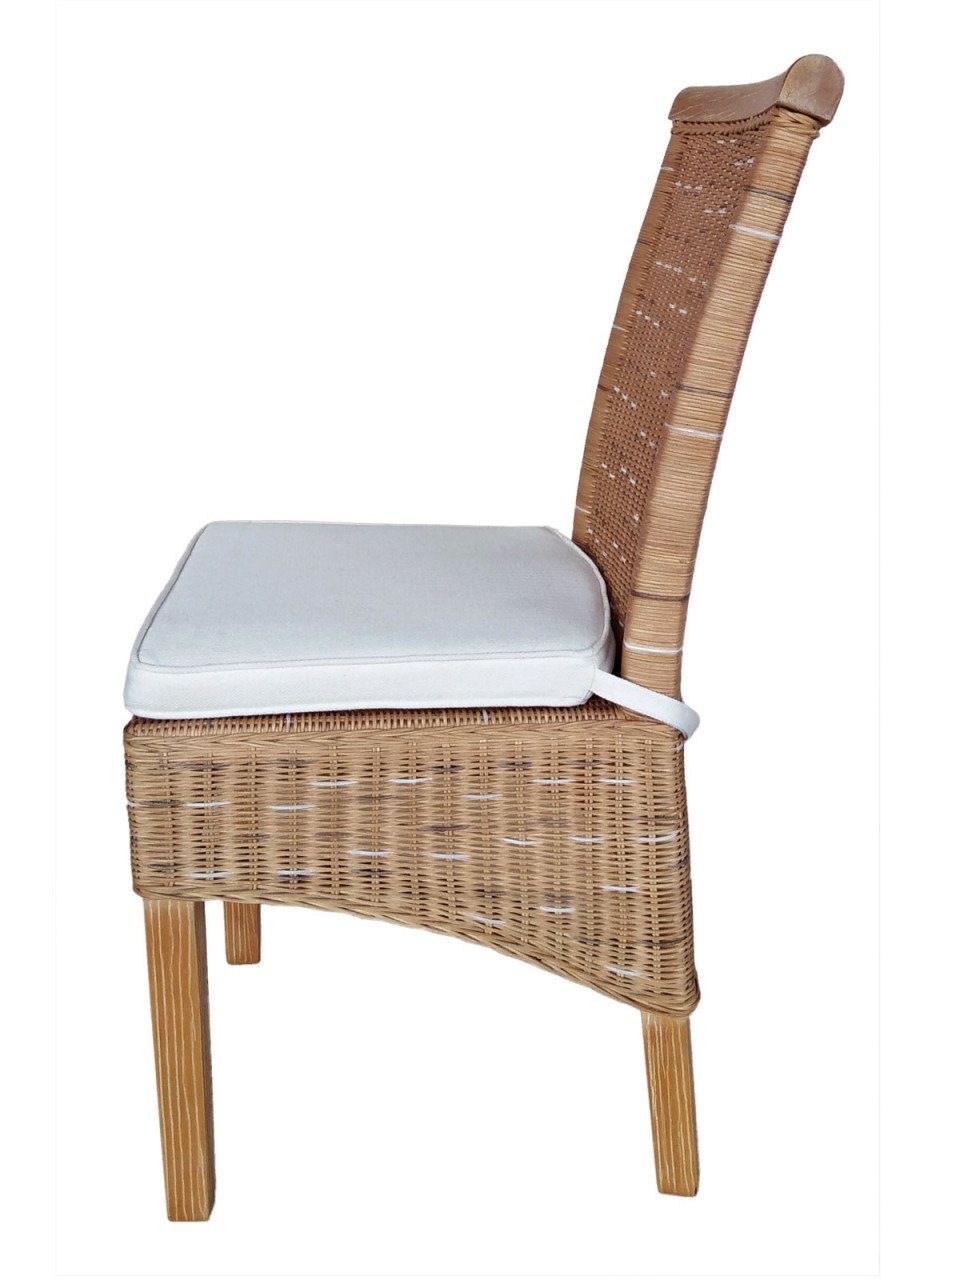 soma Sessel Stück 6 oder Sitzplatz Stuhl Esszimmer-Stühle weiß Sessel Perth braun Soma S, Sitzmöbel Rattanstühle Set